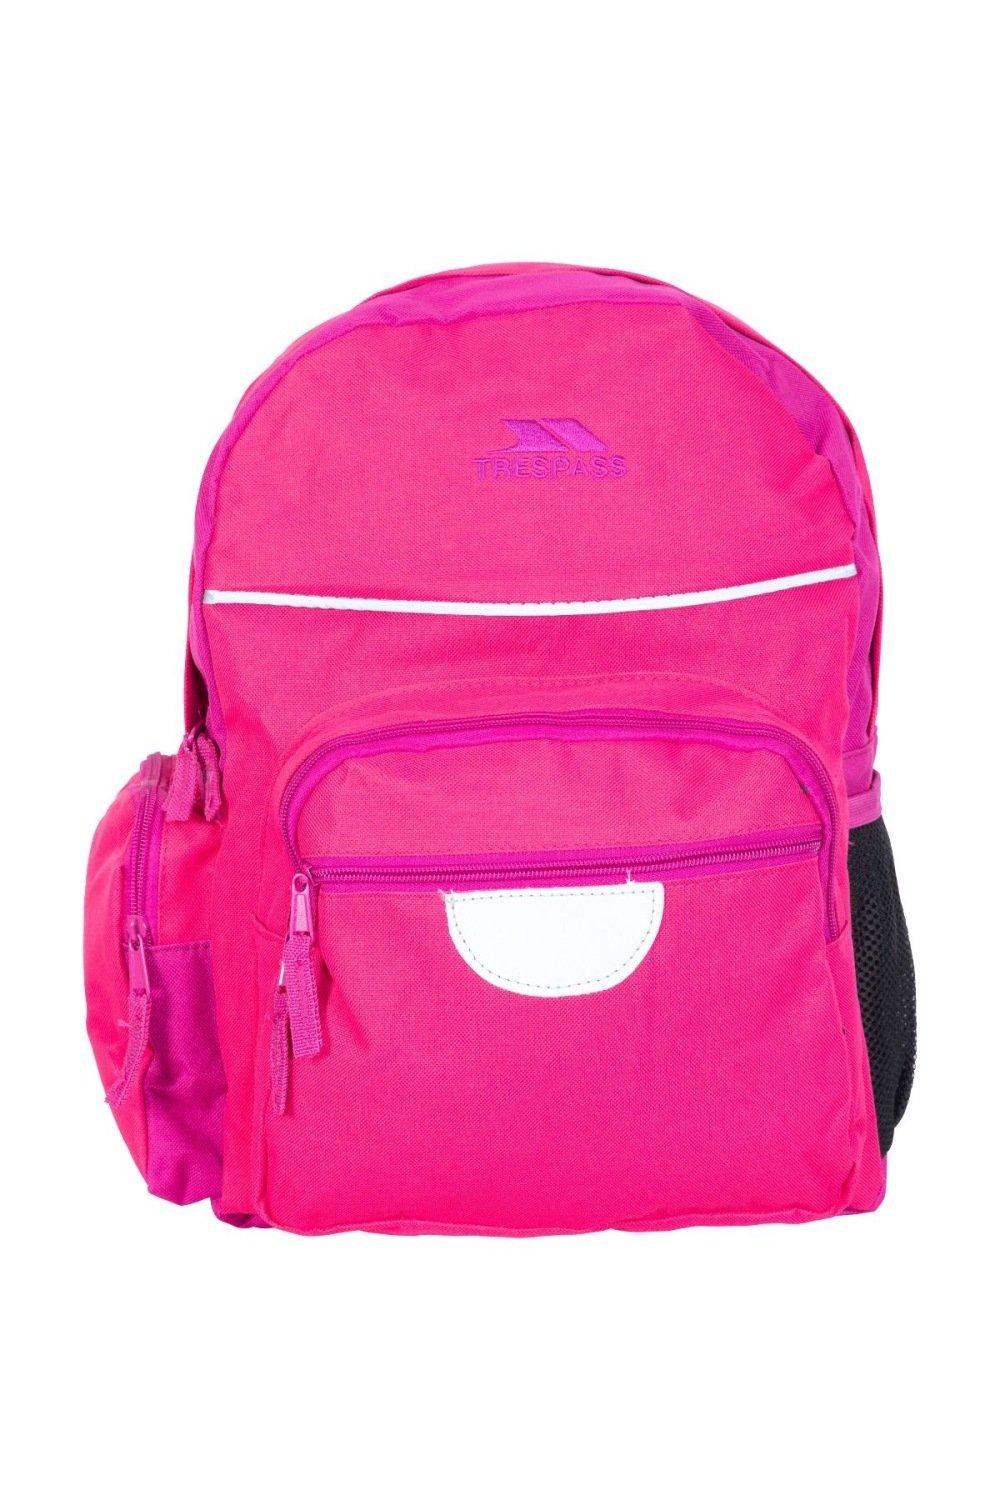 Школьный рюкзак/рюкзак Swagger (16 литров) Trespass, розовый школьный рюкзак minecraft розовый